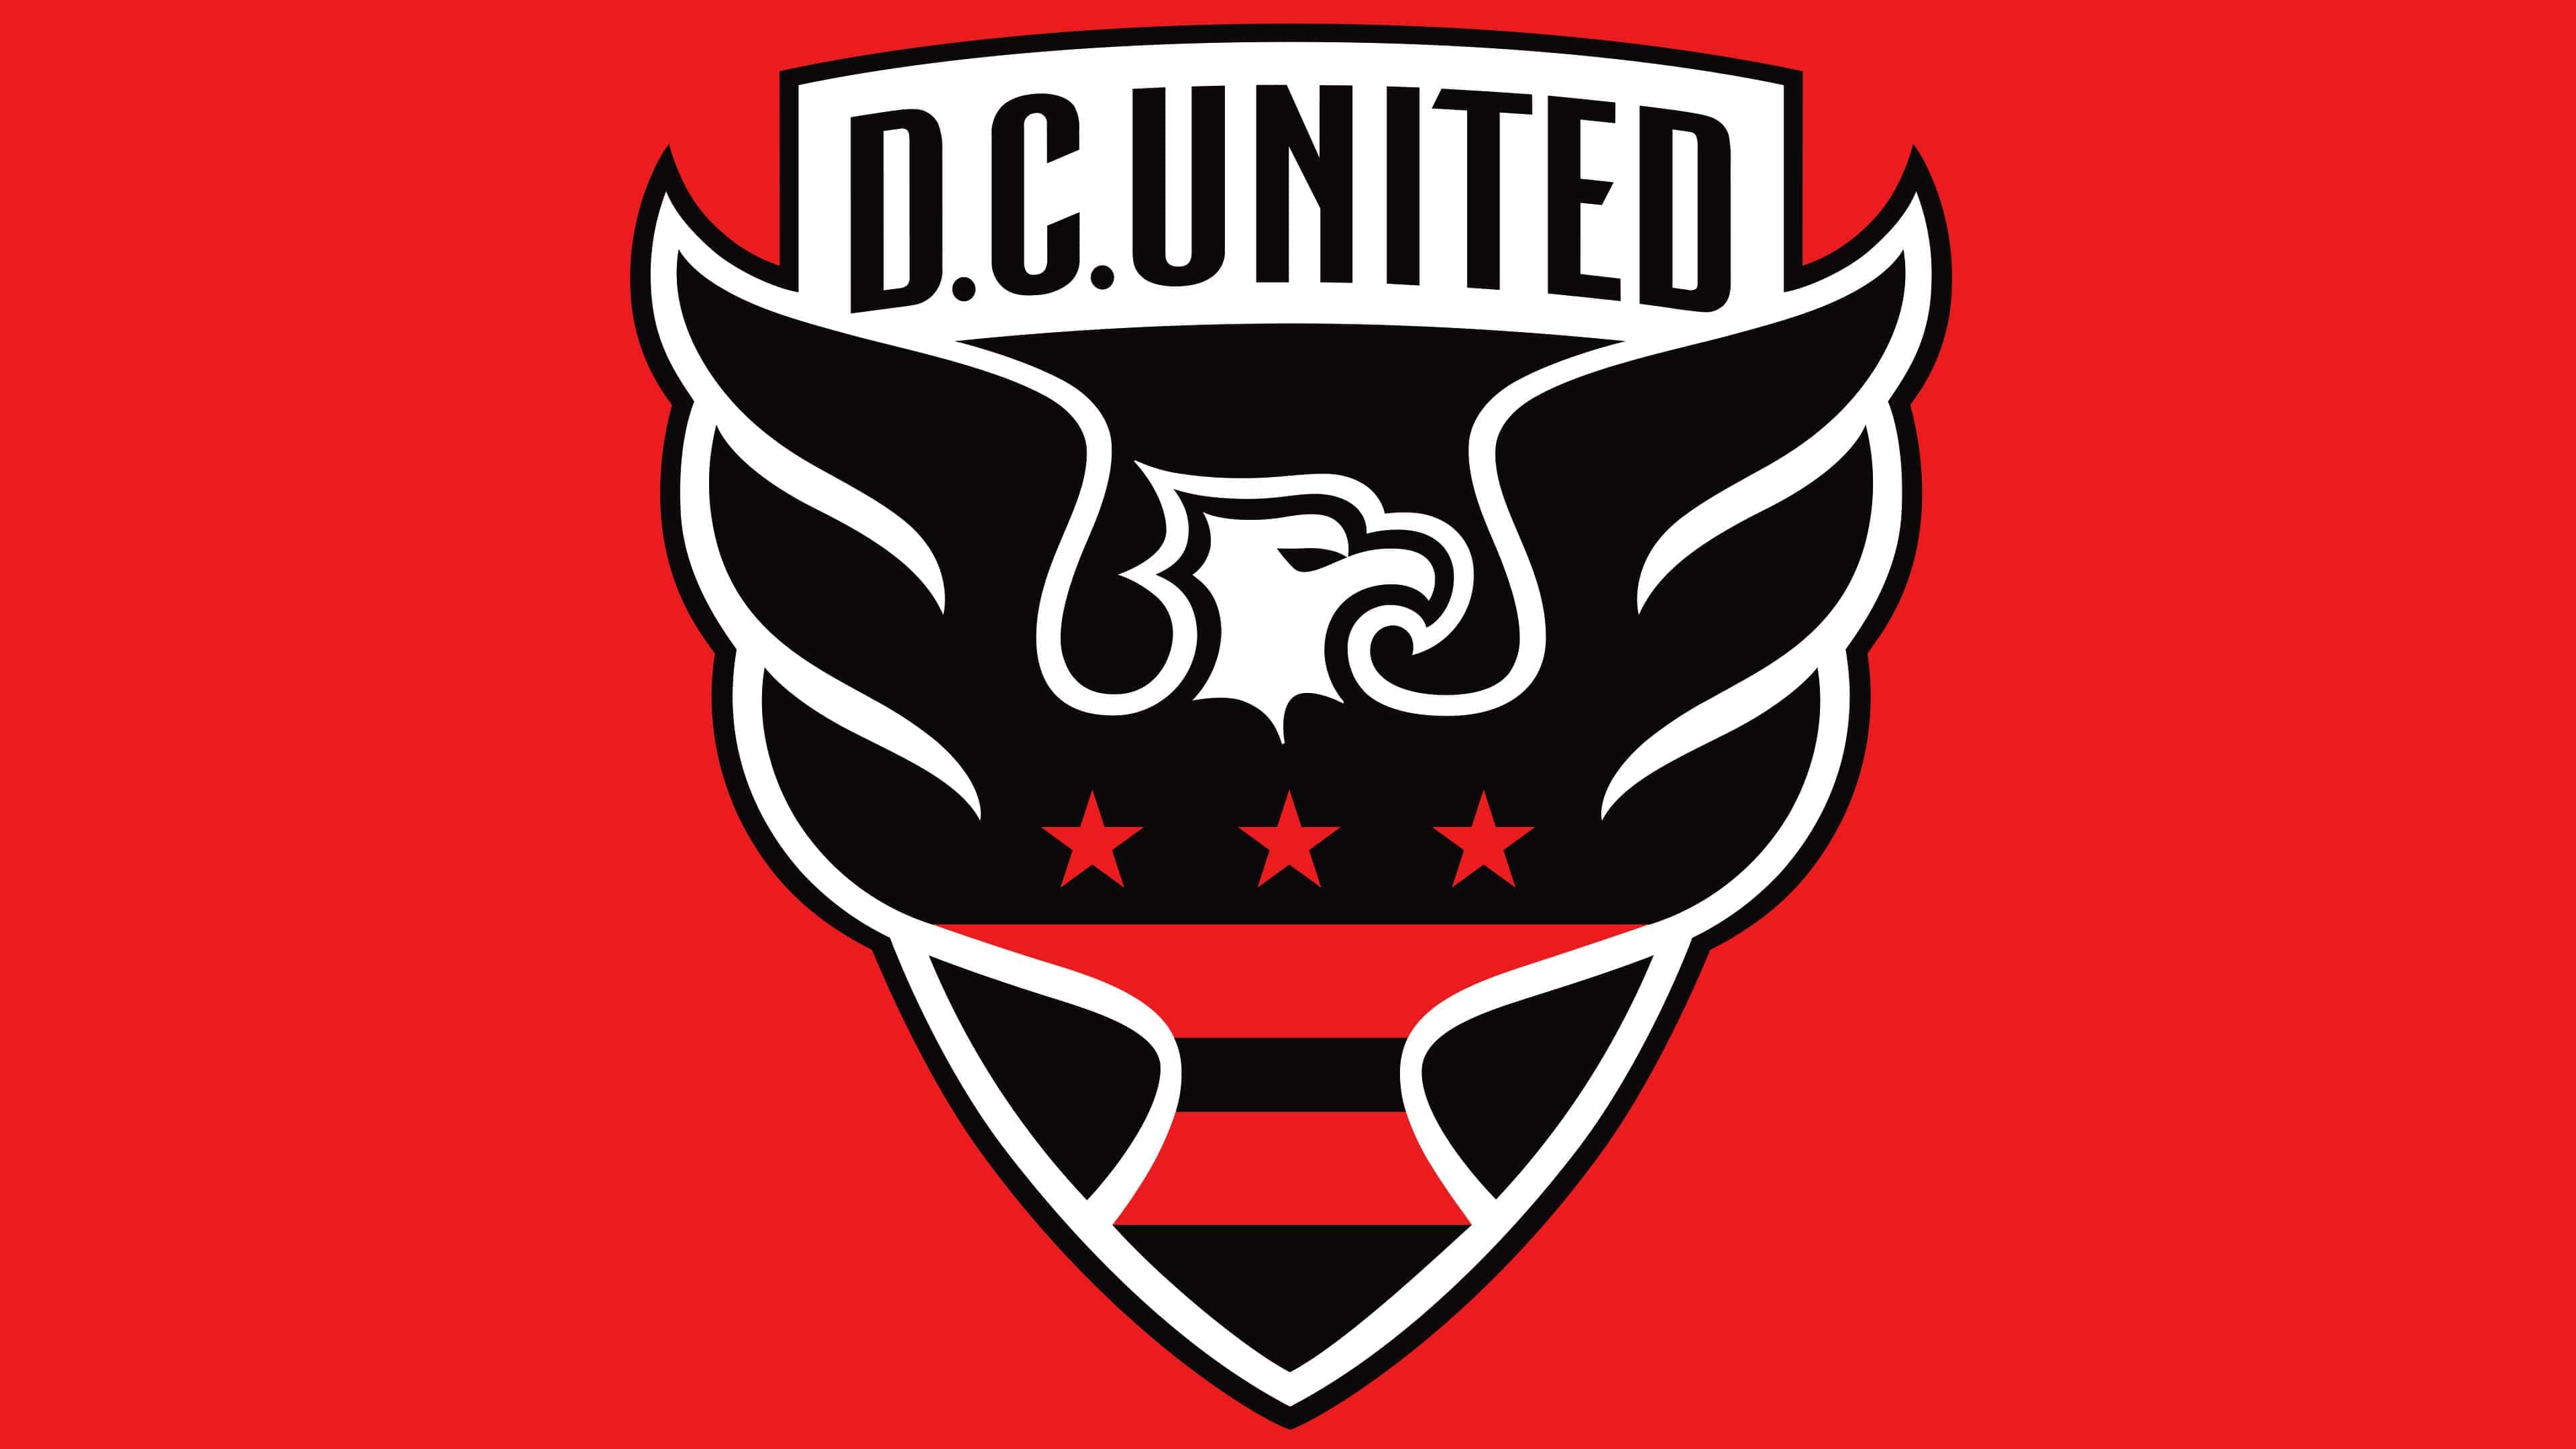 D.C. United Logo - major league soccer teams | KreedOn